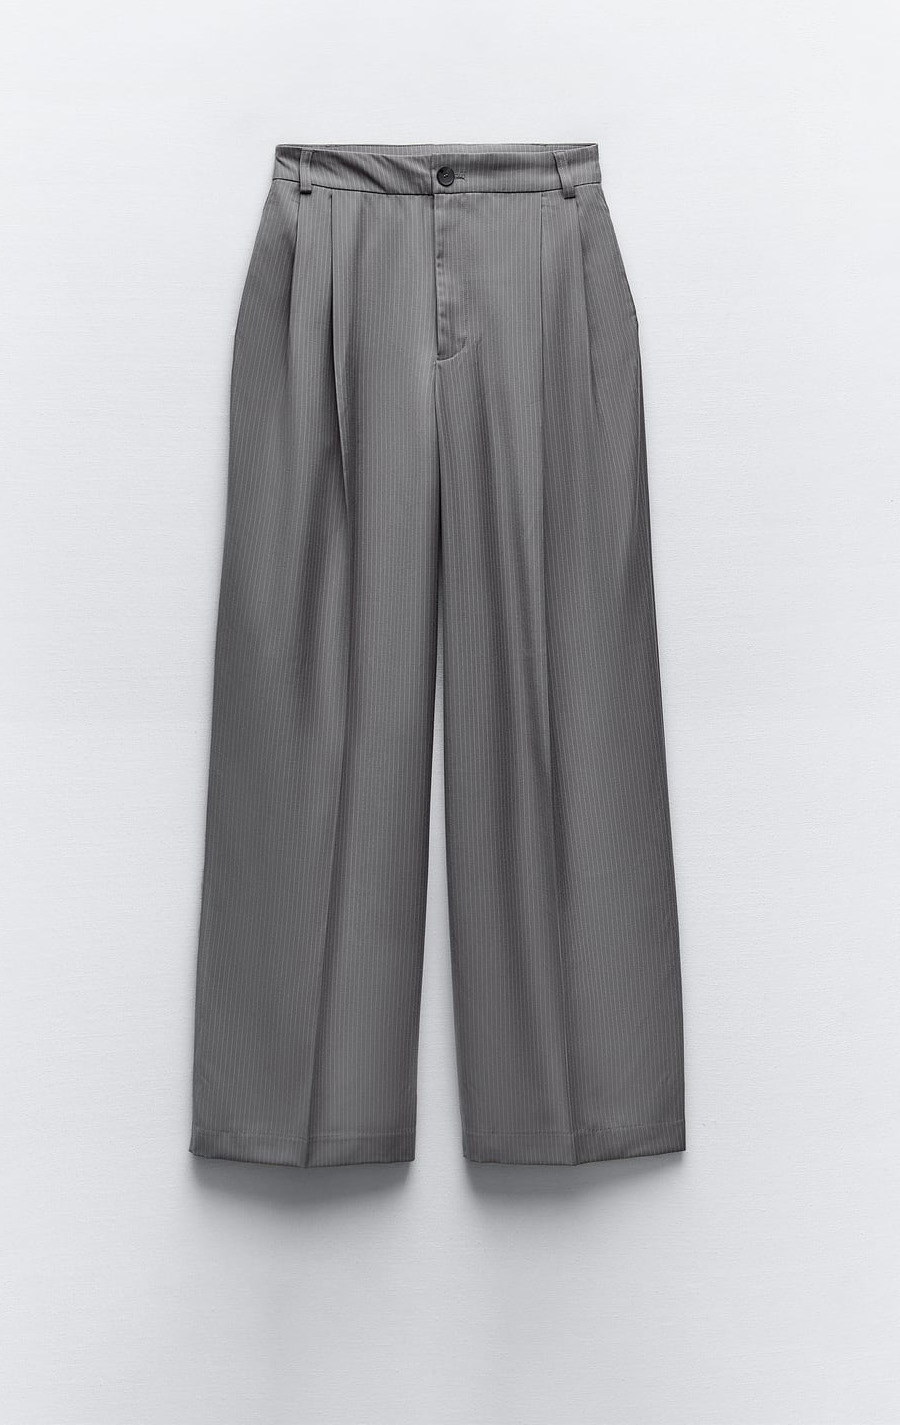 pantalones grises low cost